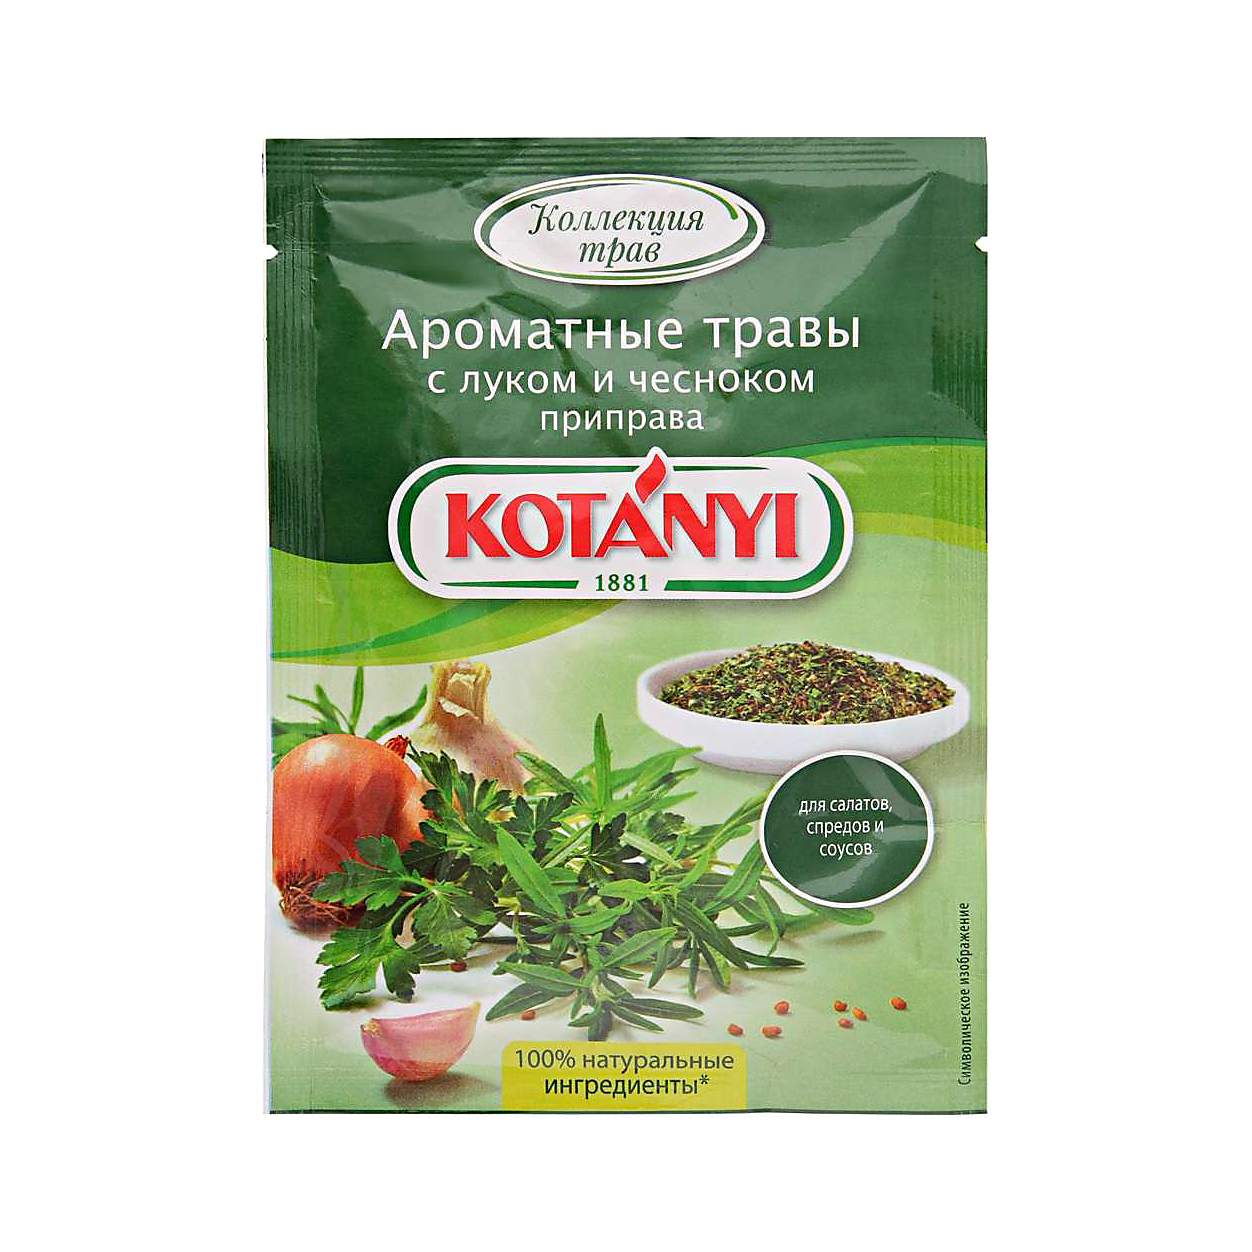 Приправа Kotanyi Ароматные травы с луком и чесноком 20 г приправа kotanyi деревенская для картофеля с луком и чесноком 20 г